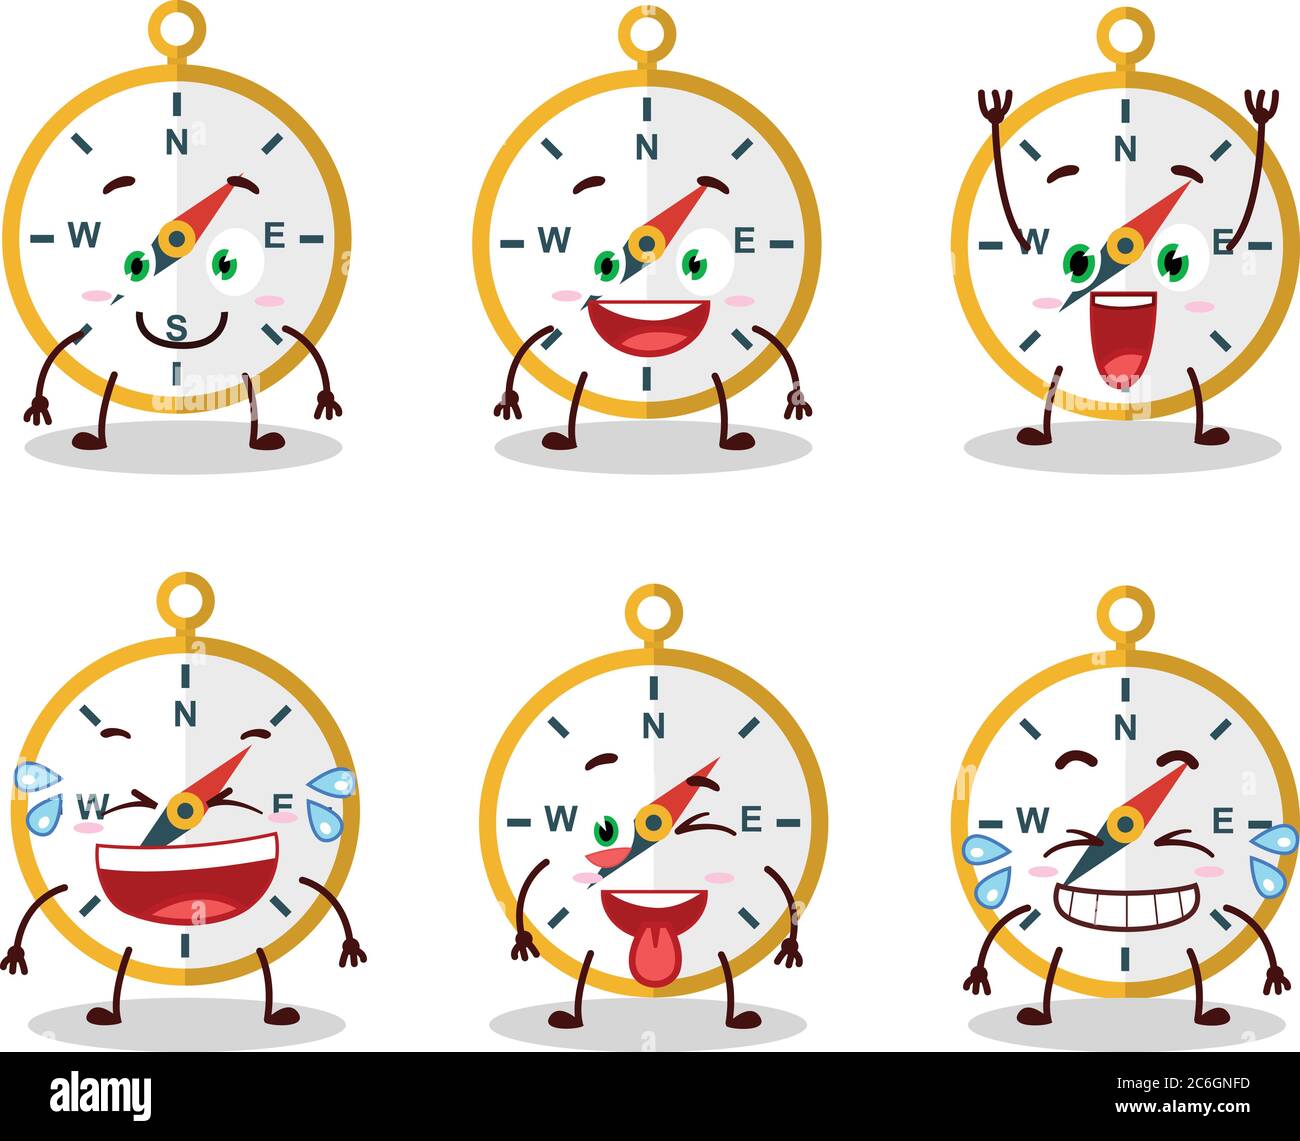 Personnage de dessin animé de la boussole avec l'expression du sourire  Image Vectorielle Stock - Alamy